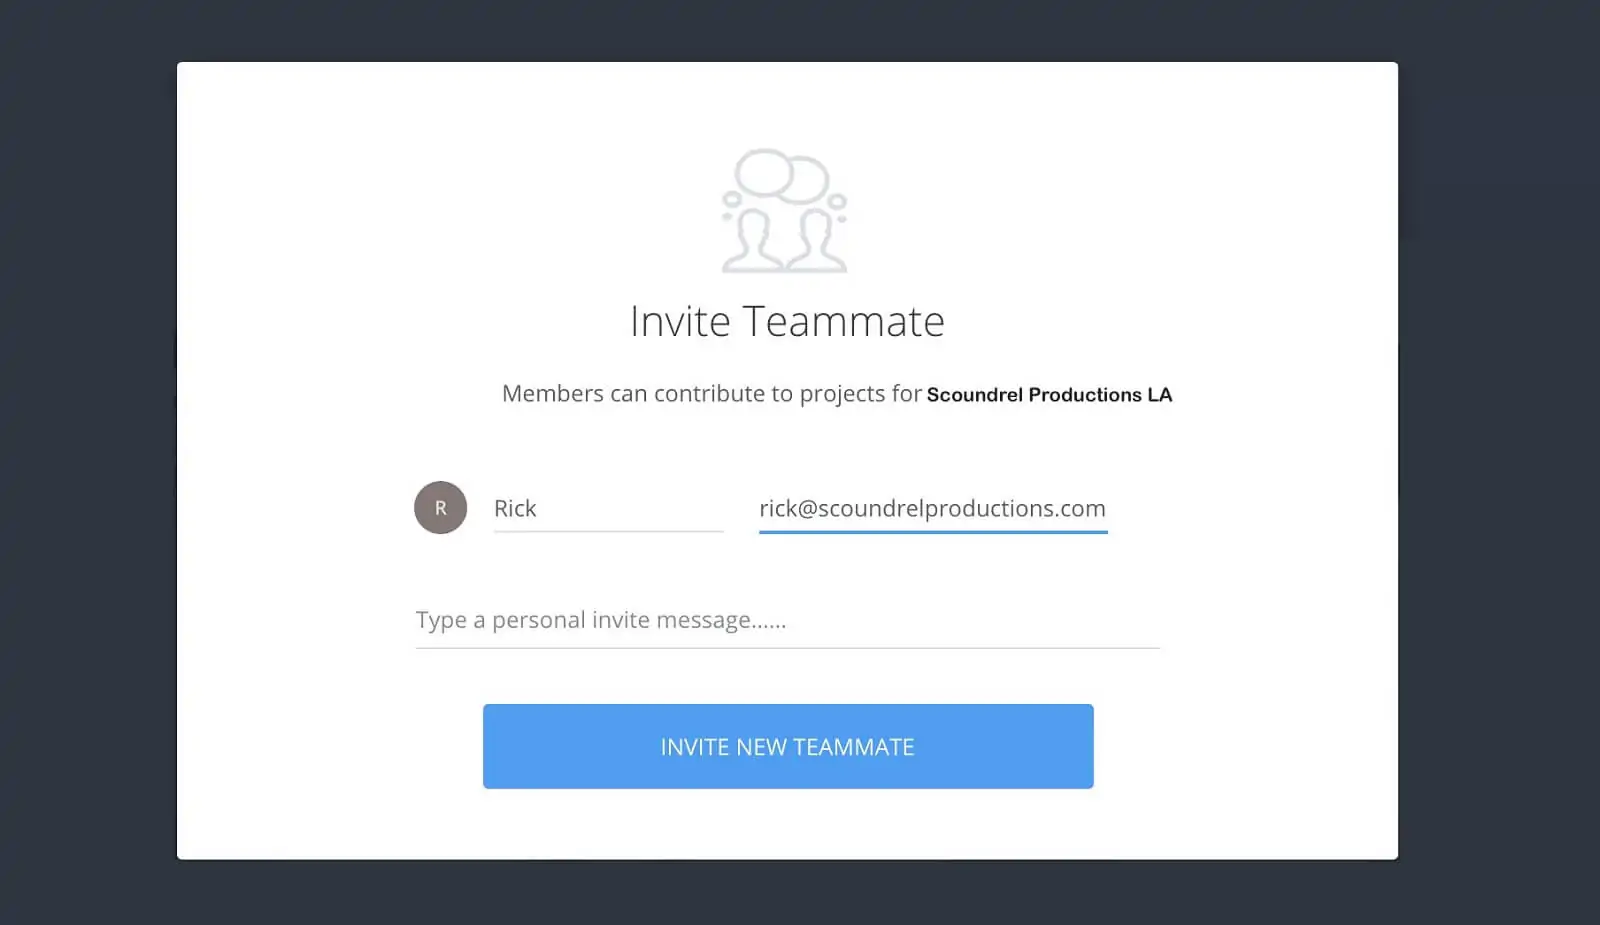 Invite teammate pop-up - Fill in and click invite